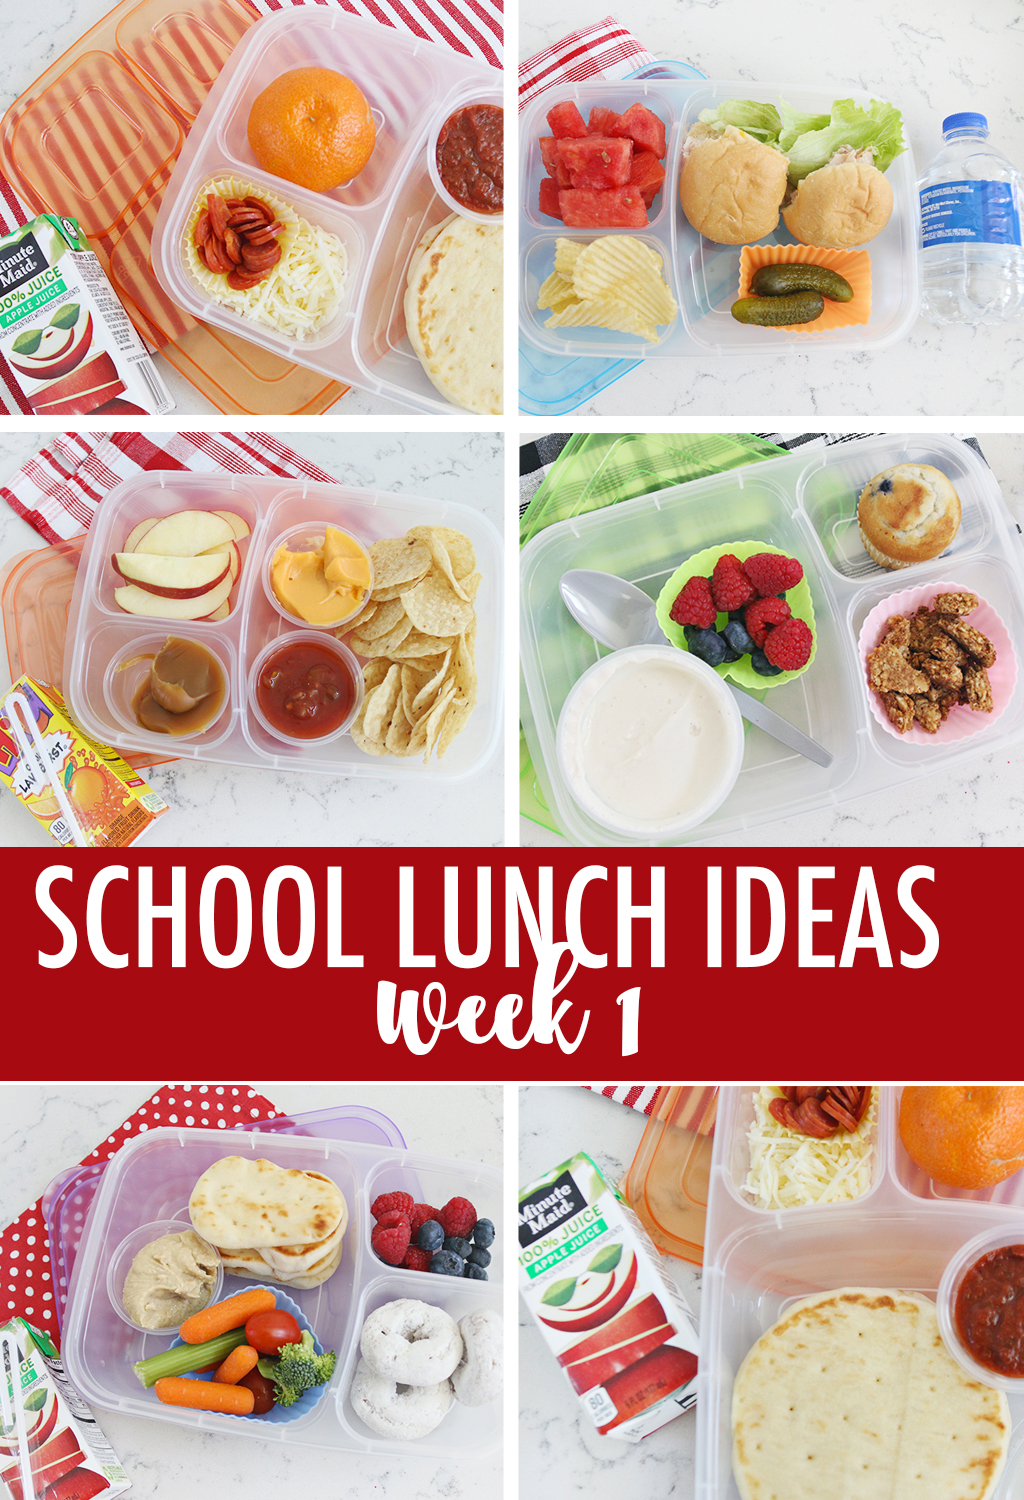 School Lunch Ideas